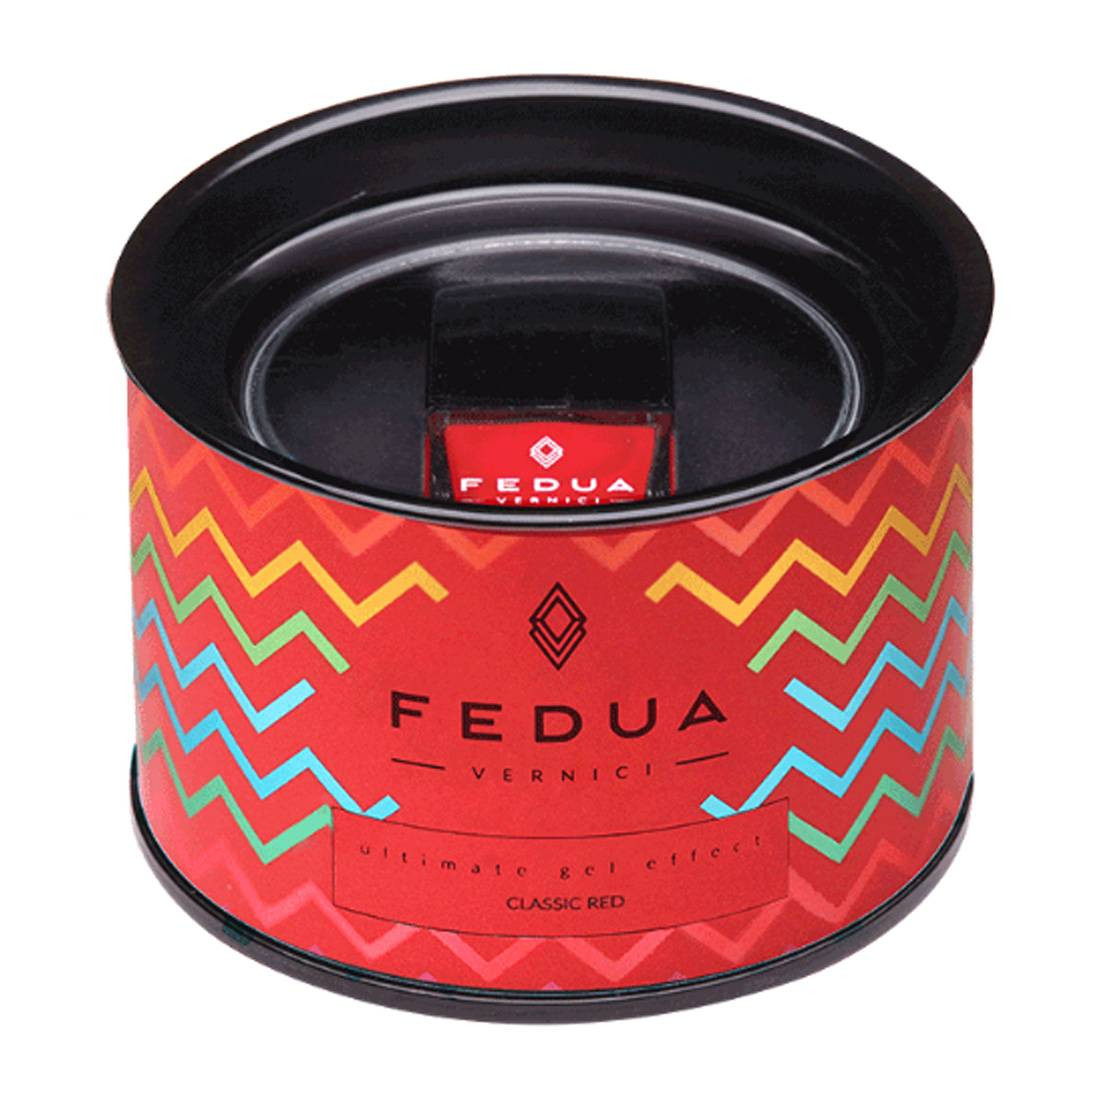 Fedua Vernici Ultimate Collection Classic Red - Лак для ногтей Классический красный